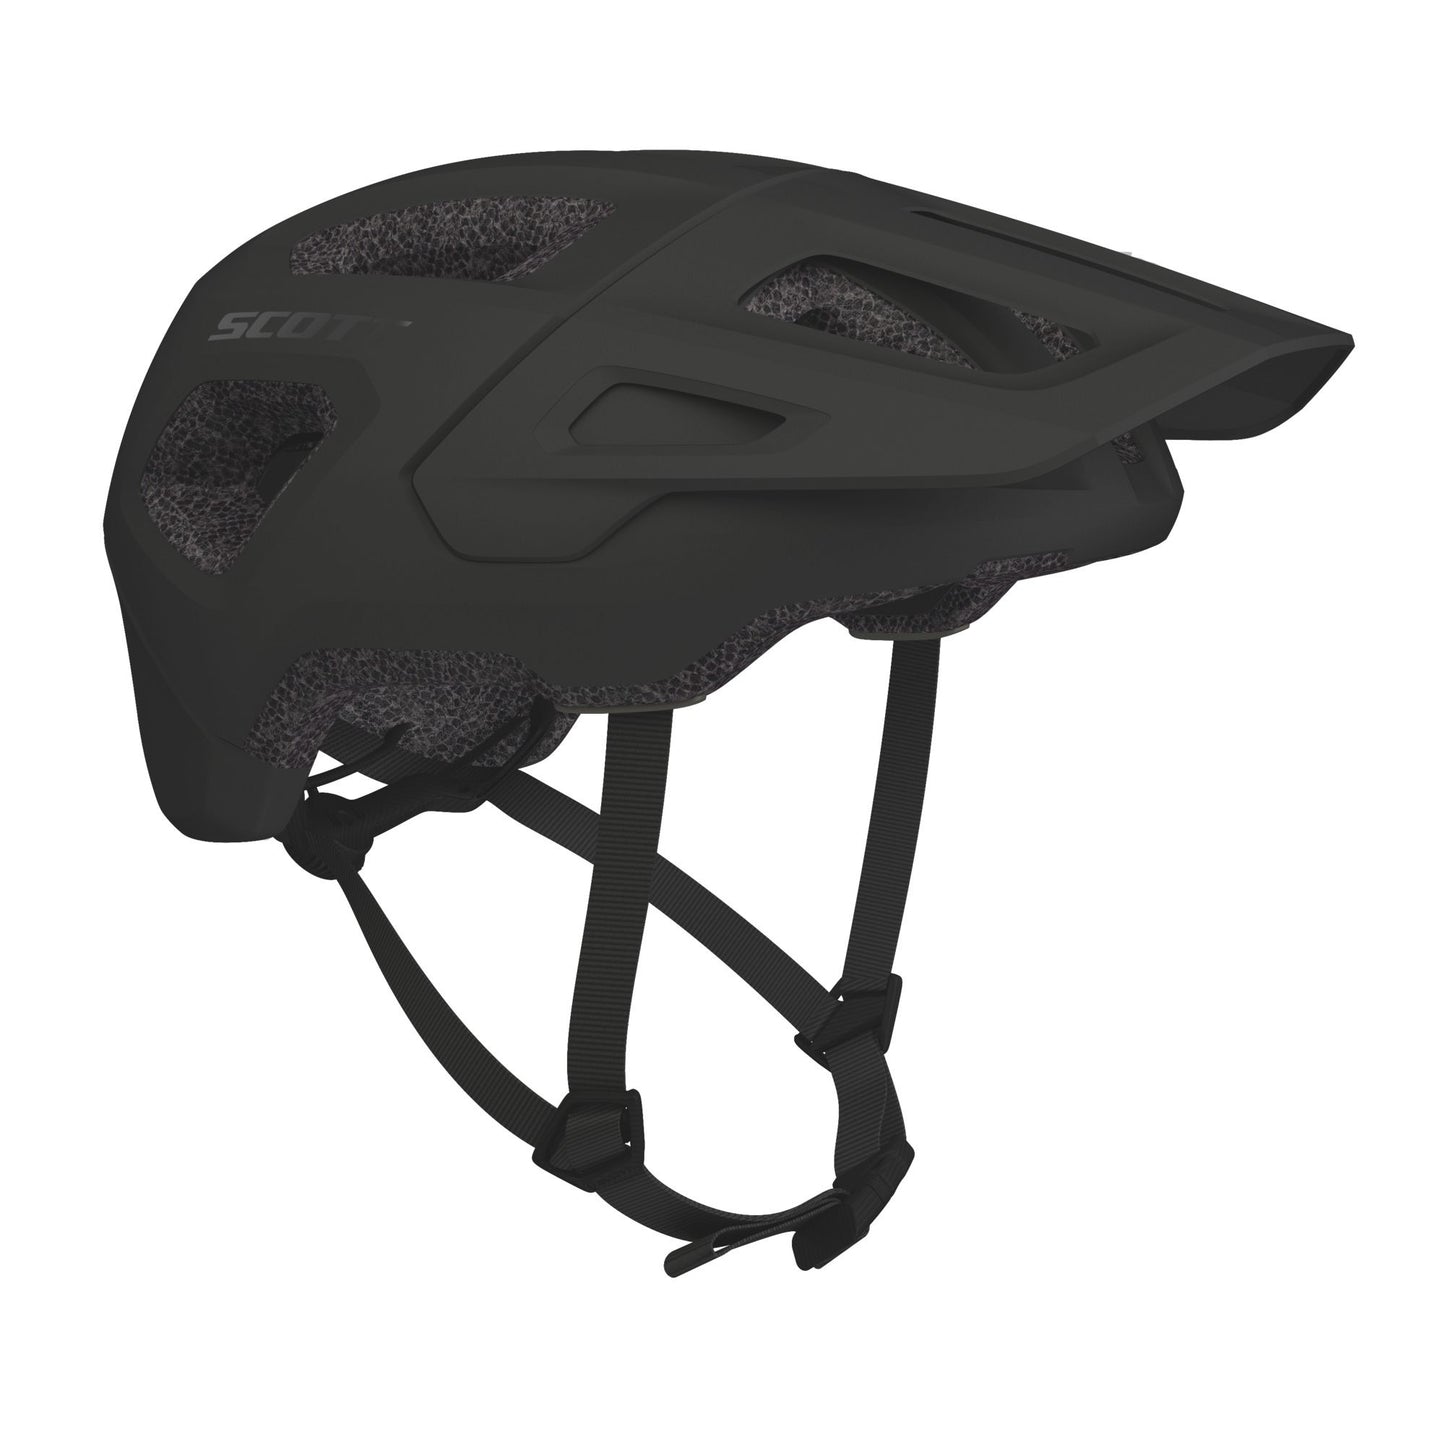 Casque Scott Argo Plus // Scott Argo Plus Helmet